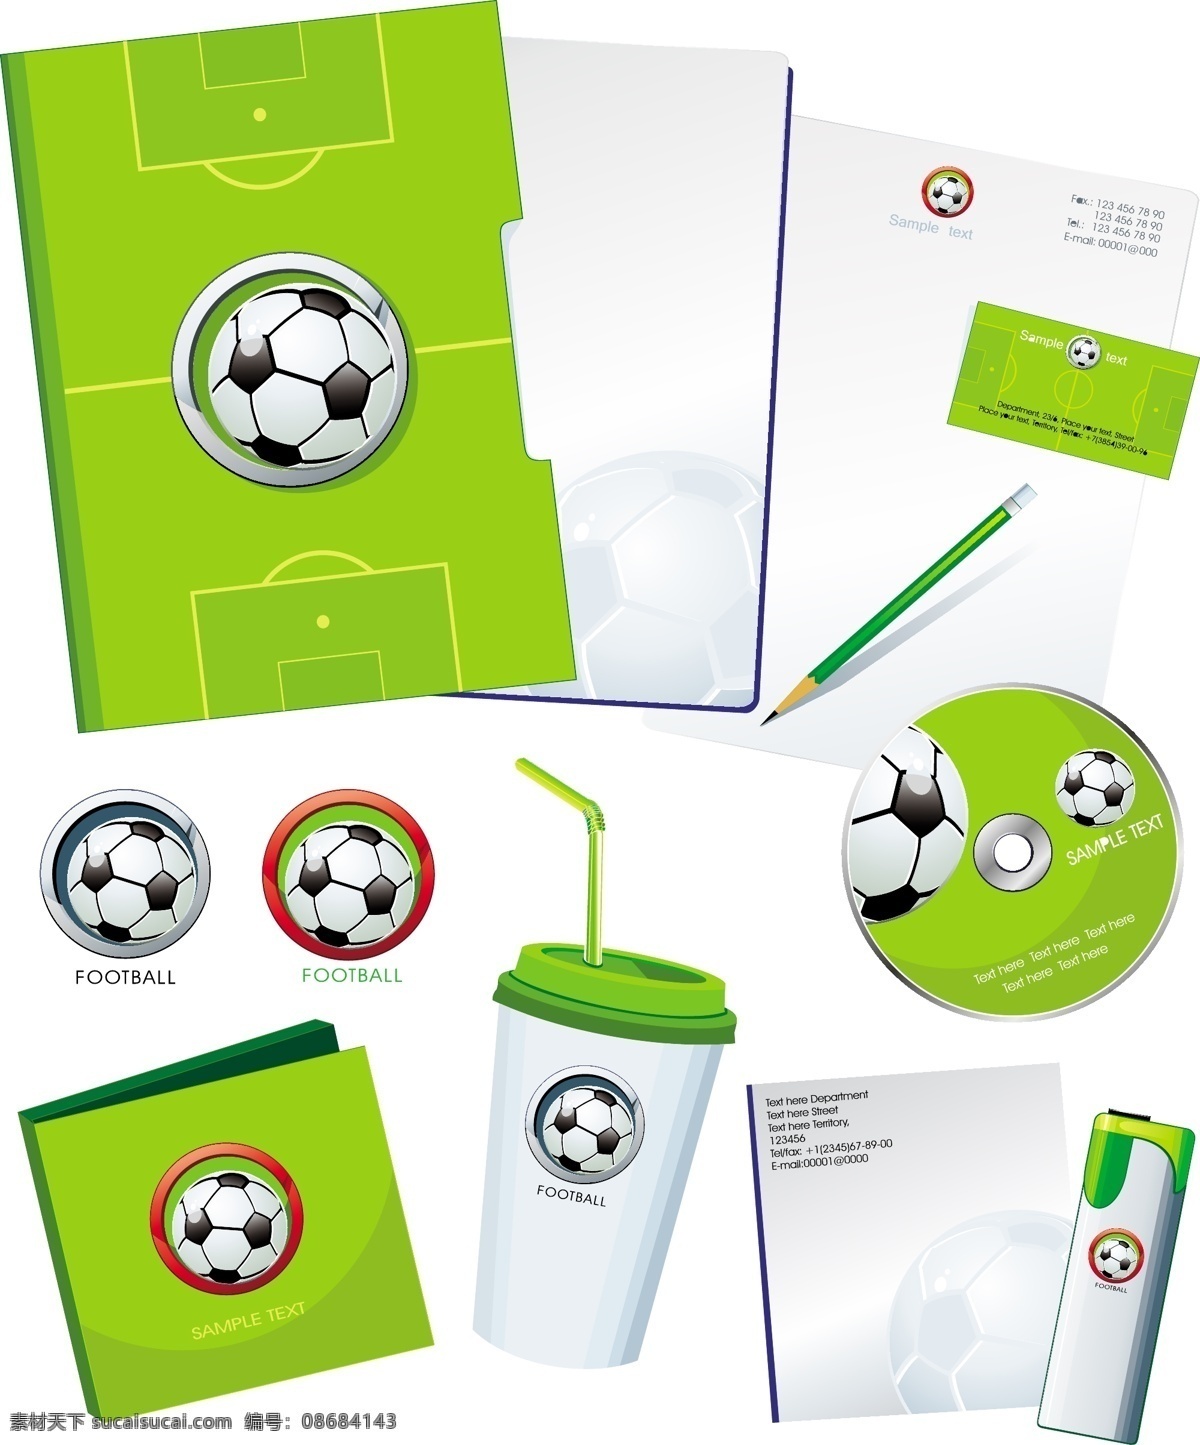 足球 主题 矢量 夹 磁盘 名片 世界杯 文件夹 信封 专辑 足球场 矢量图 日常生活